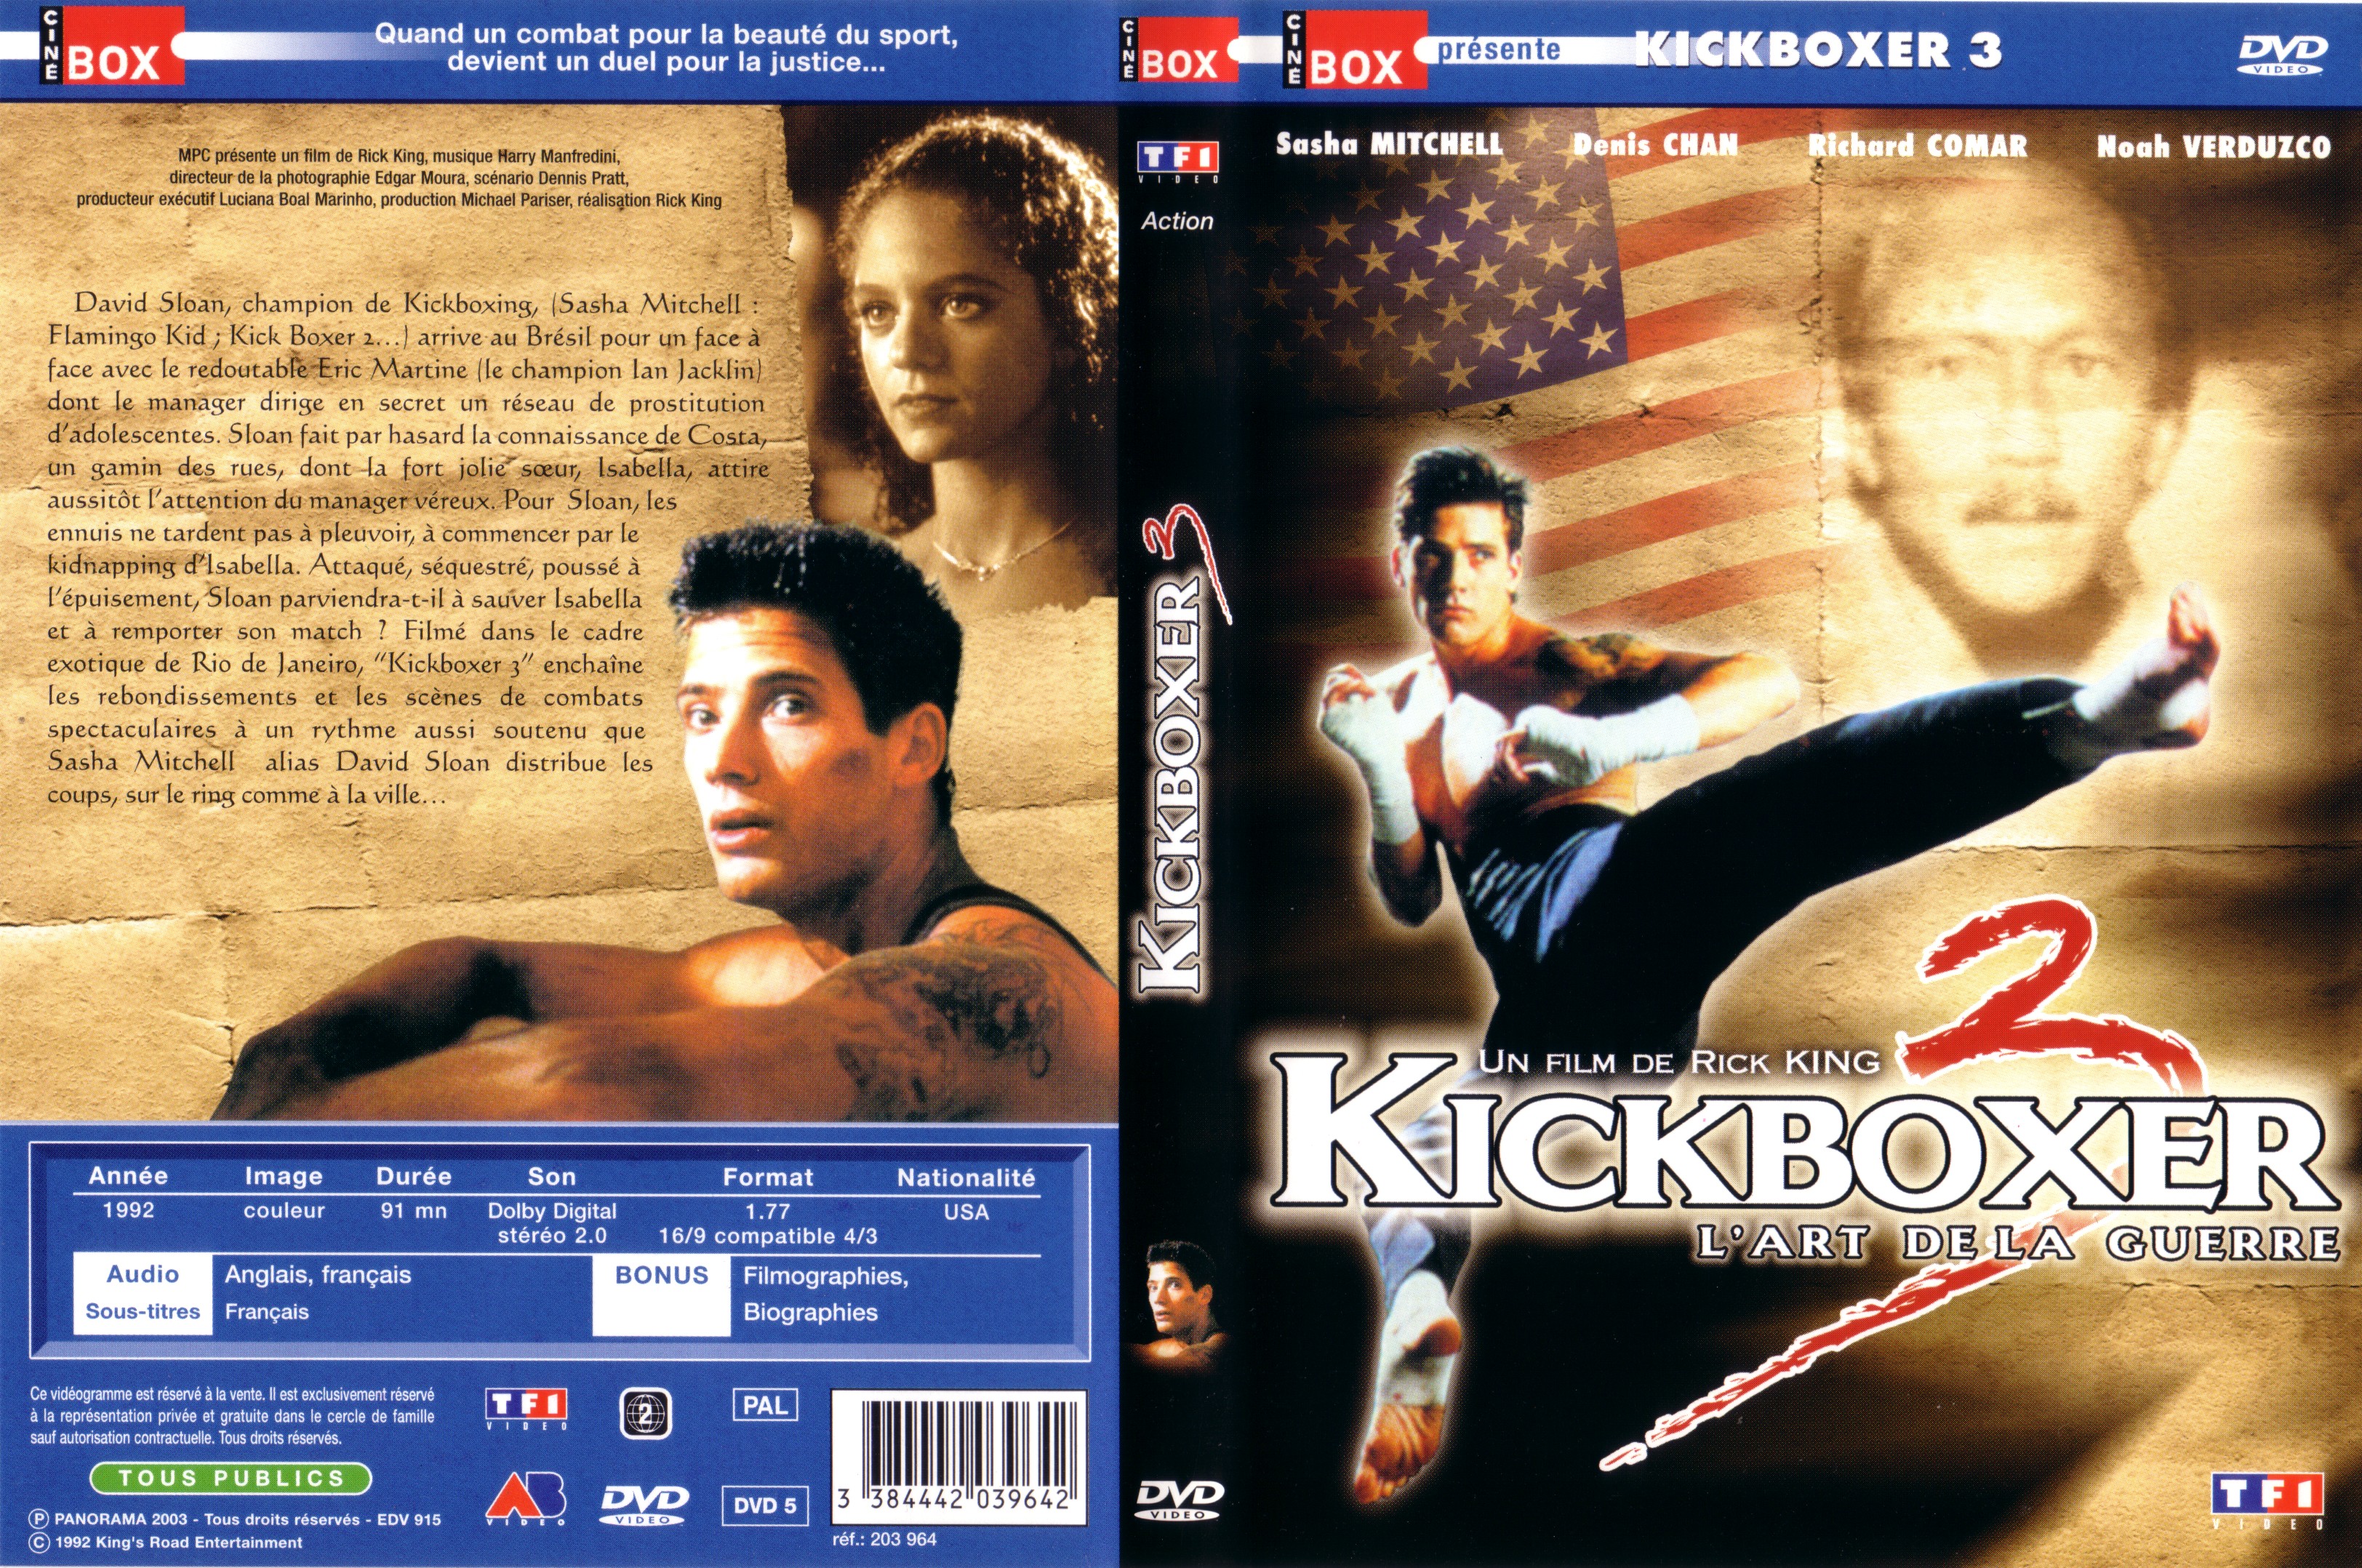 Jaquette DVD Kickboxer 3